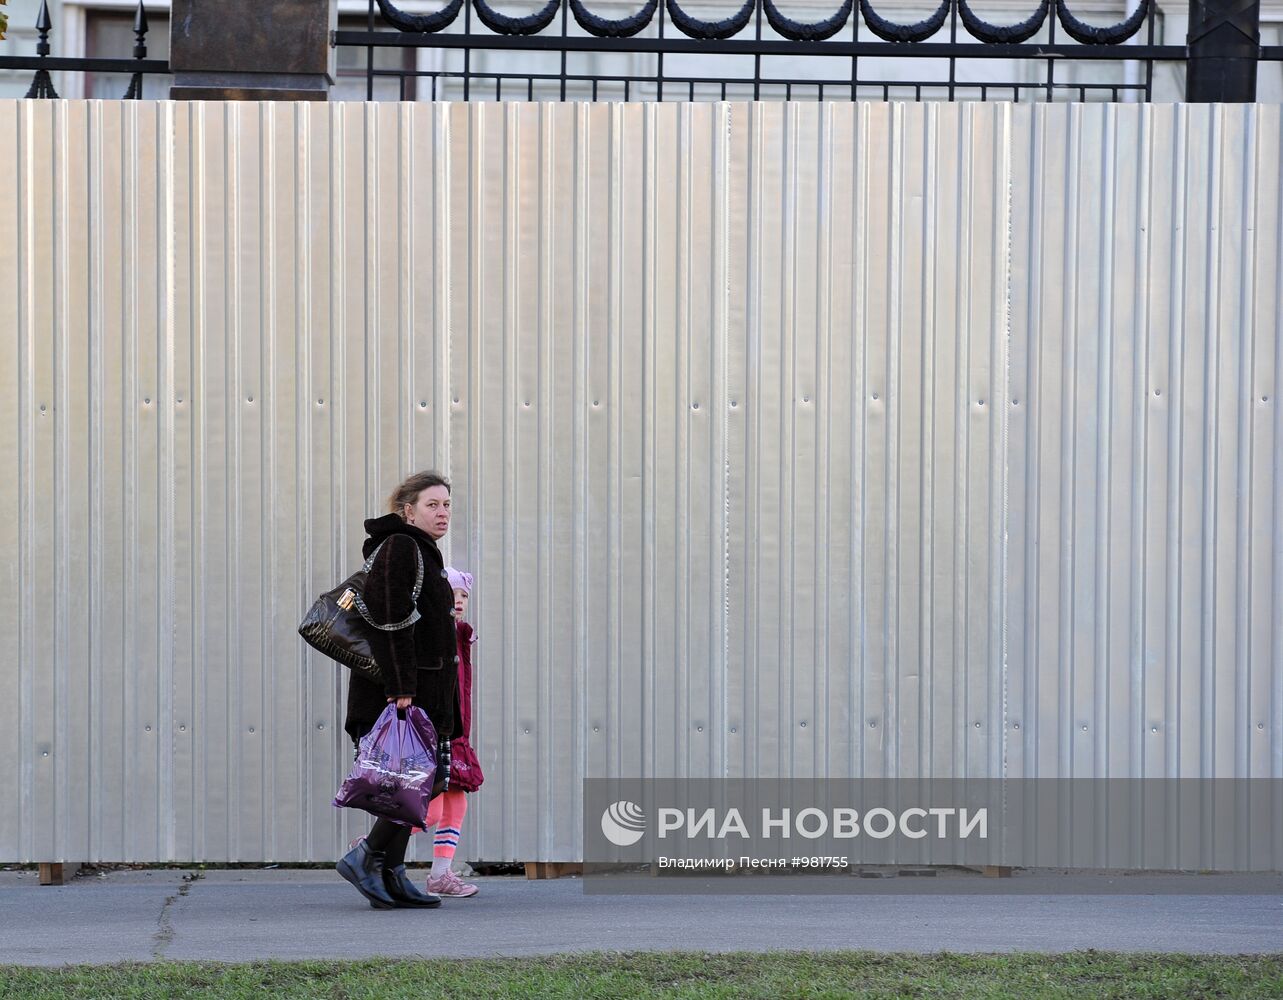 Вокруг Старой площади в центре Москвы установили забор